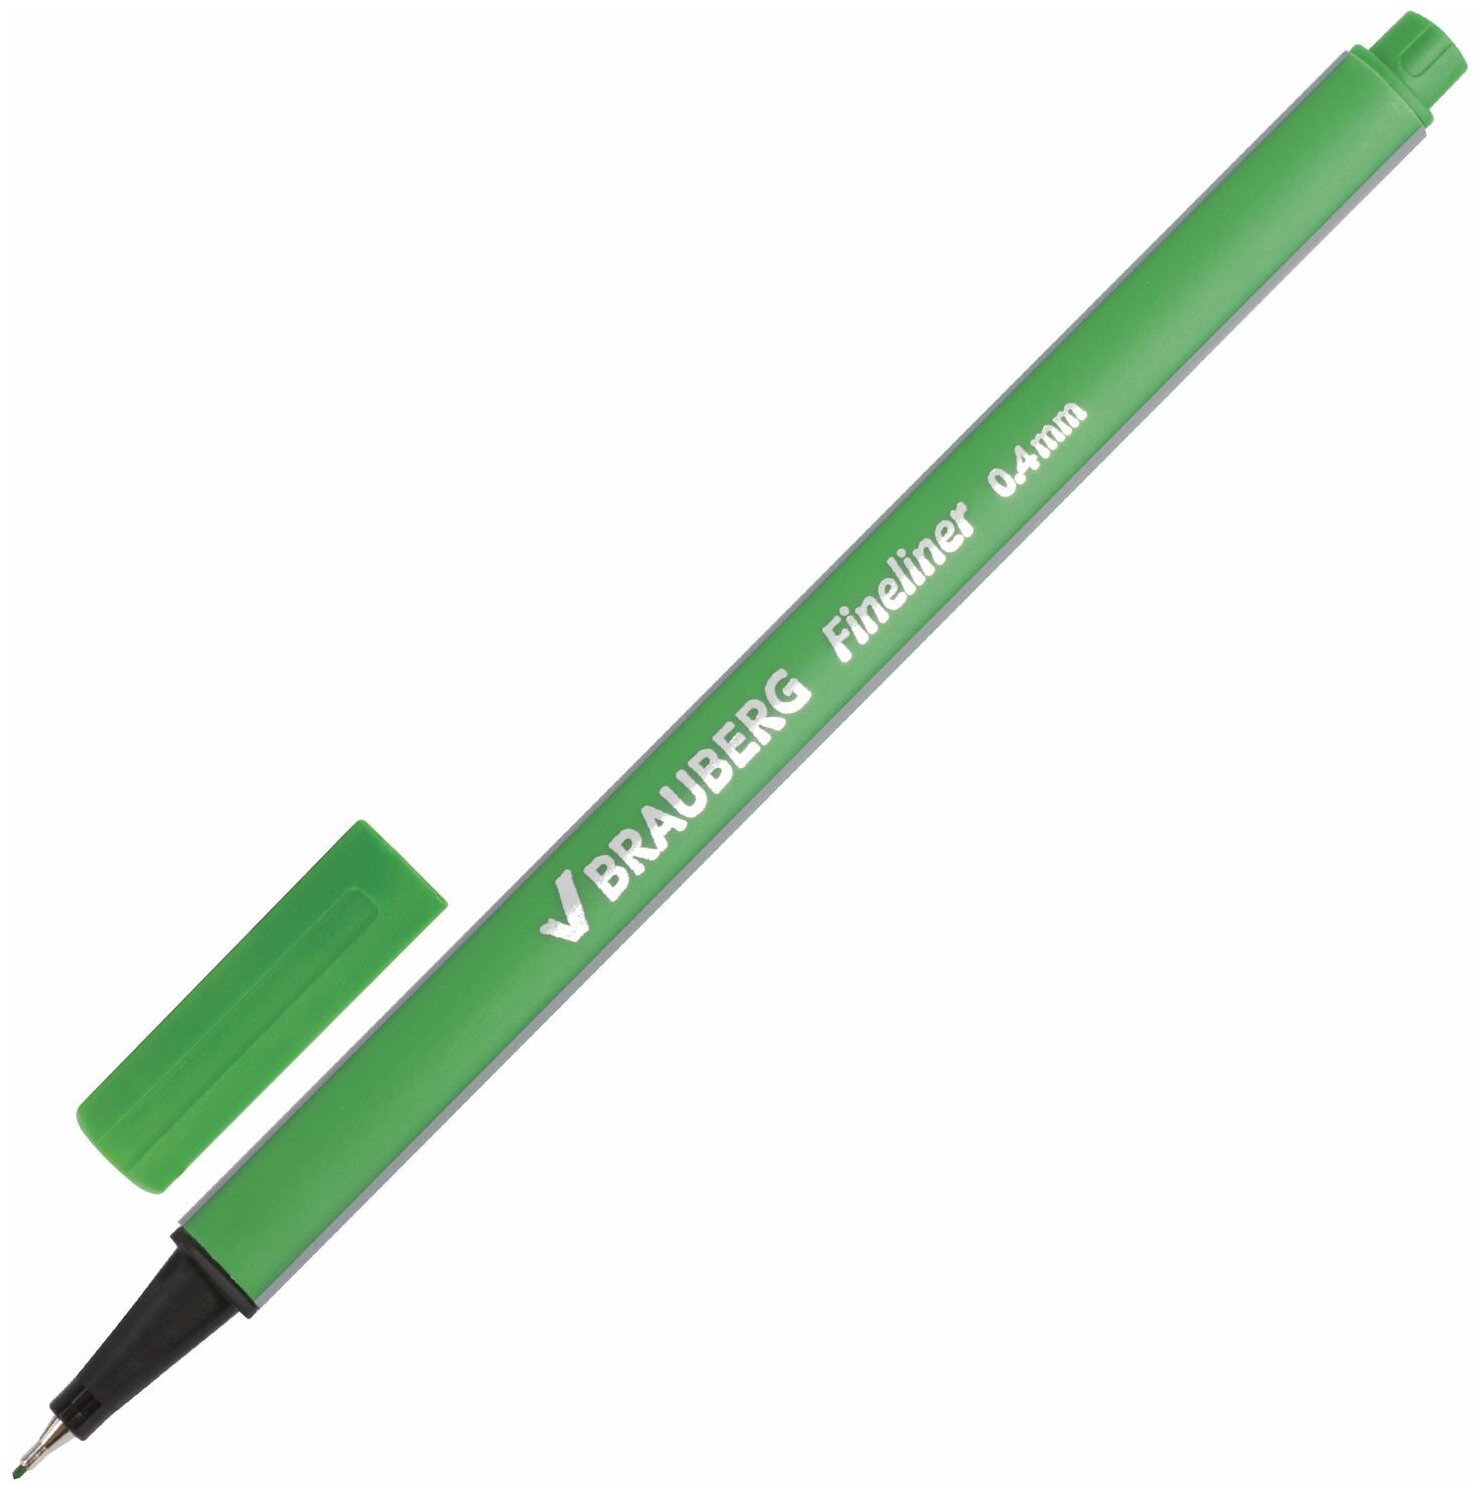 Ручка капиллярная Brauberg Aero (0.4мм, метал. наконечник, трехгранная) светло-зеленая, 12шт. (142250)